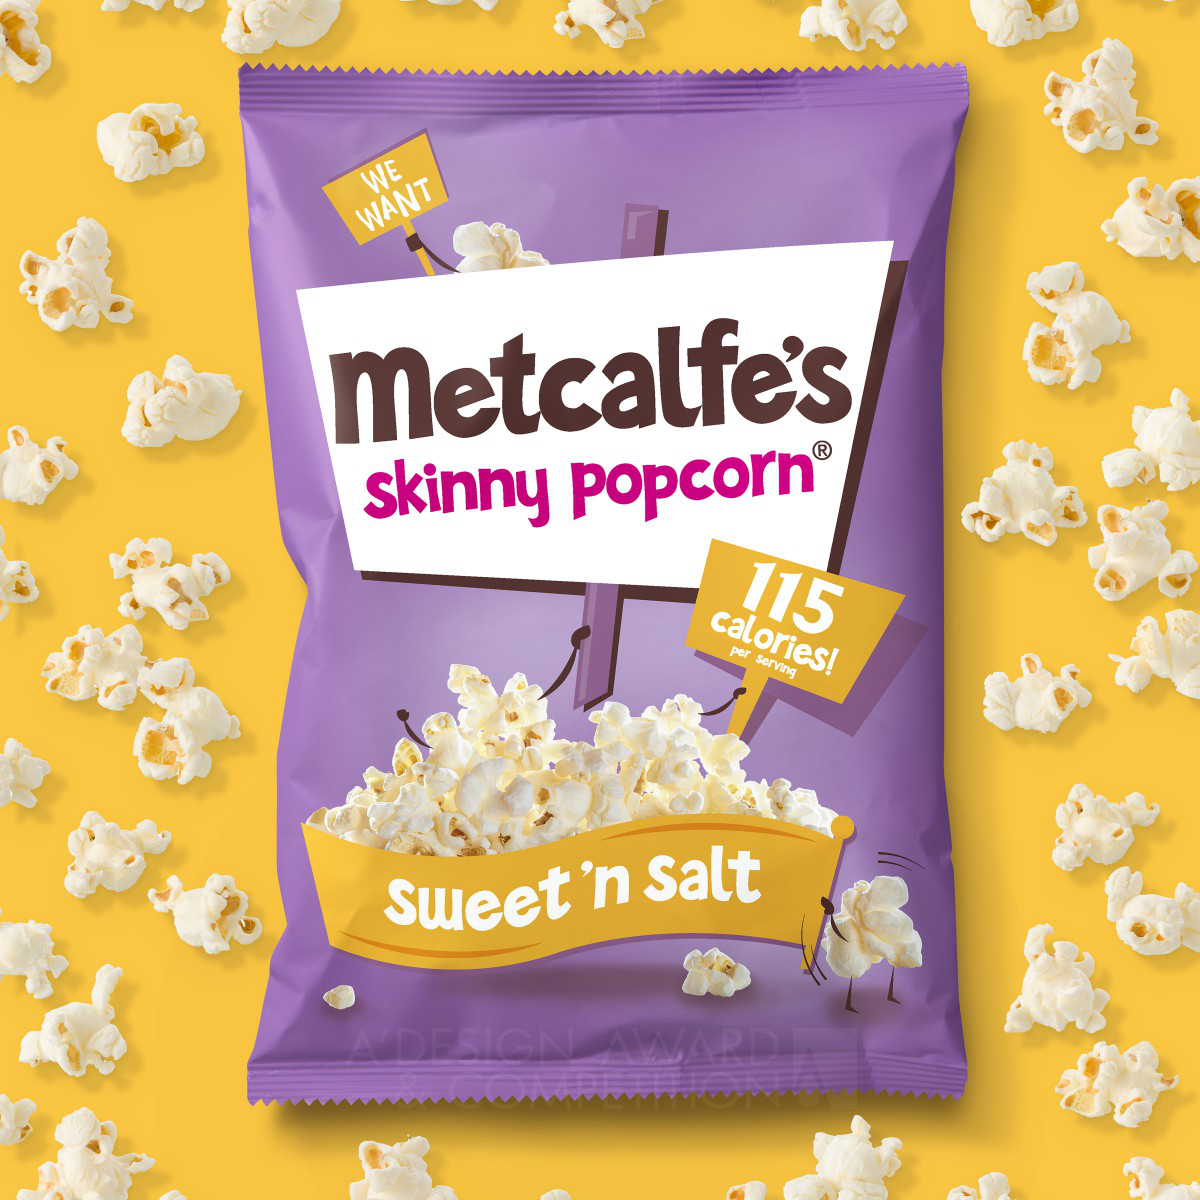 Metcalfe's Skinny Popcorn Food packaging by Springetts Brand Design